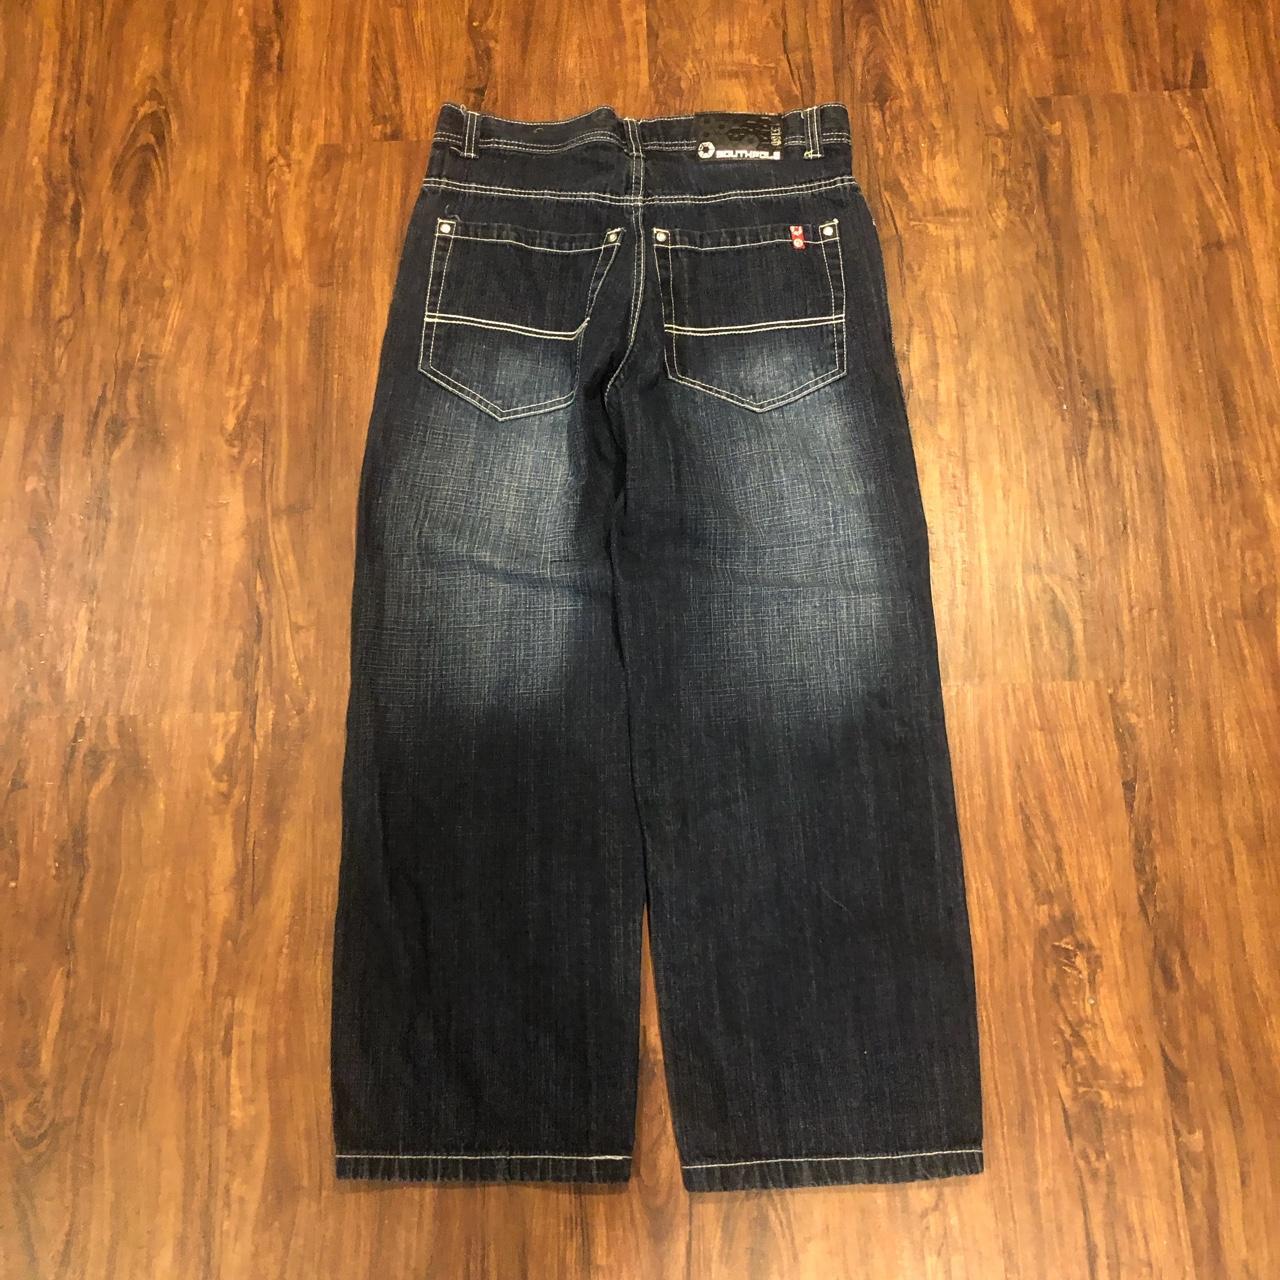 Vintage Southpole jeans Really nice fade Size 32... - Depop